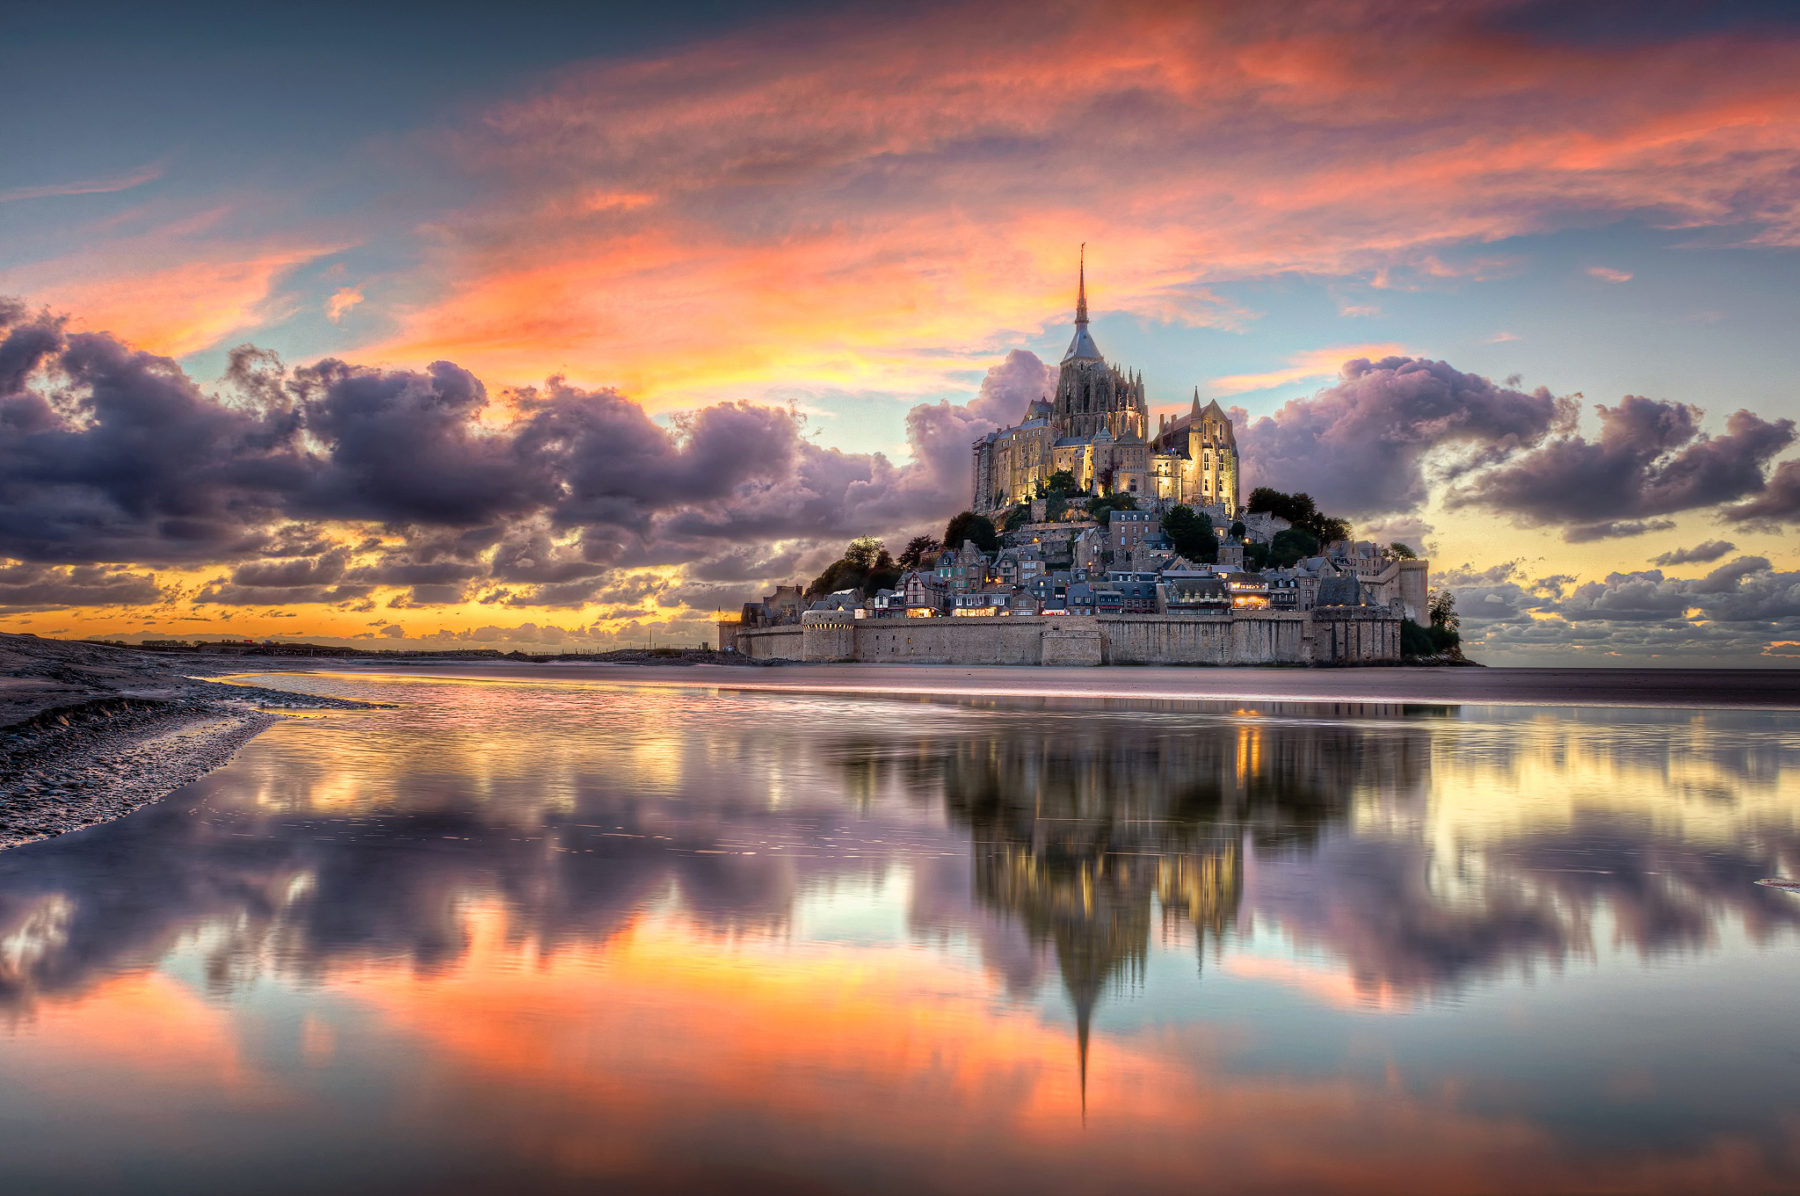 Mont Saint-Michel - UNESCO World Heritage Site